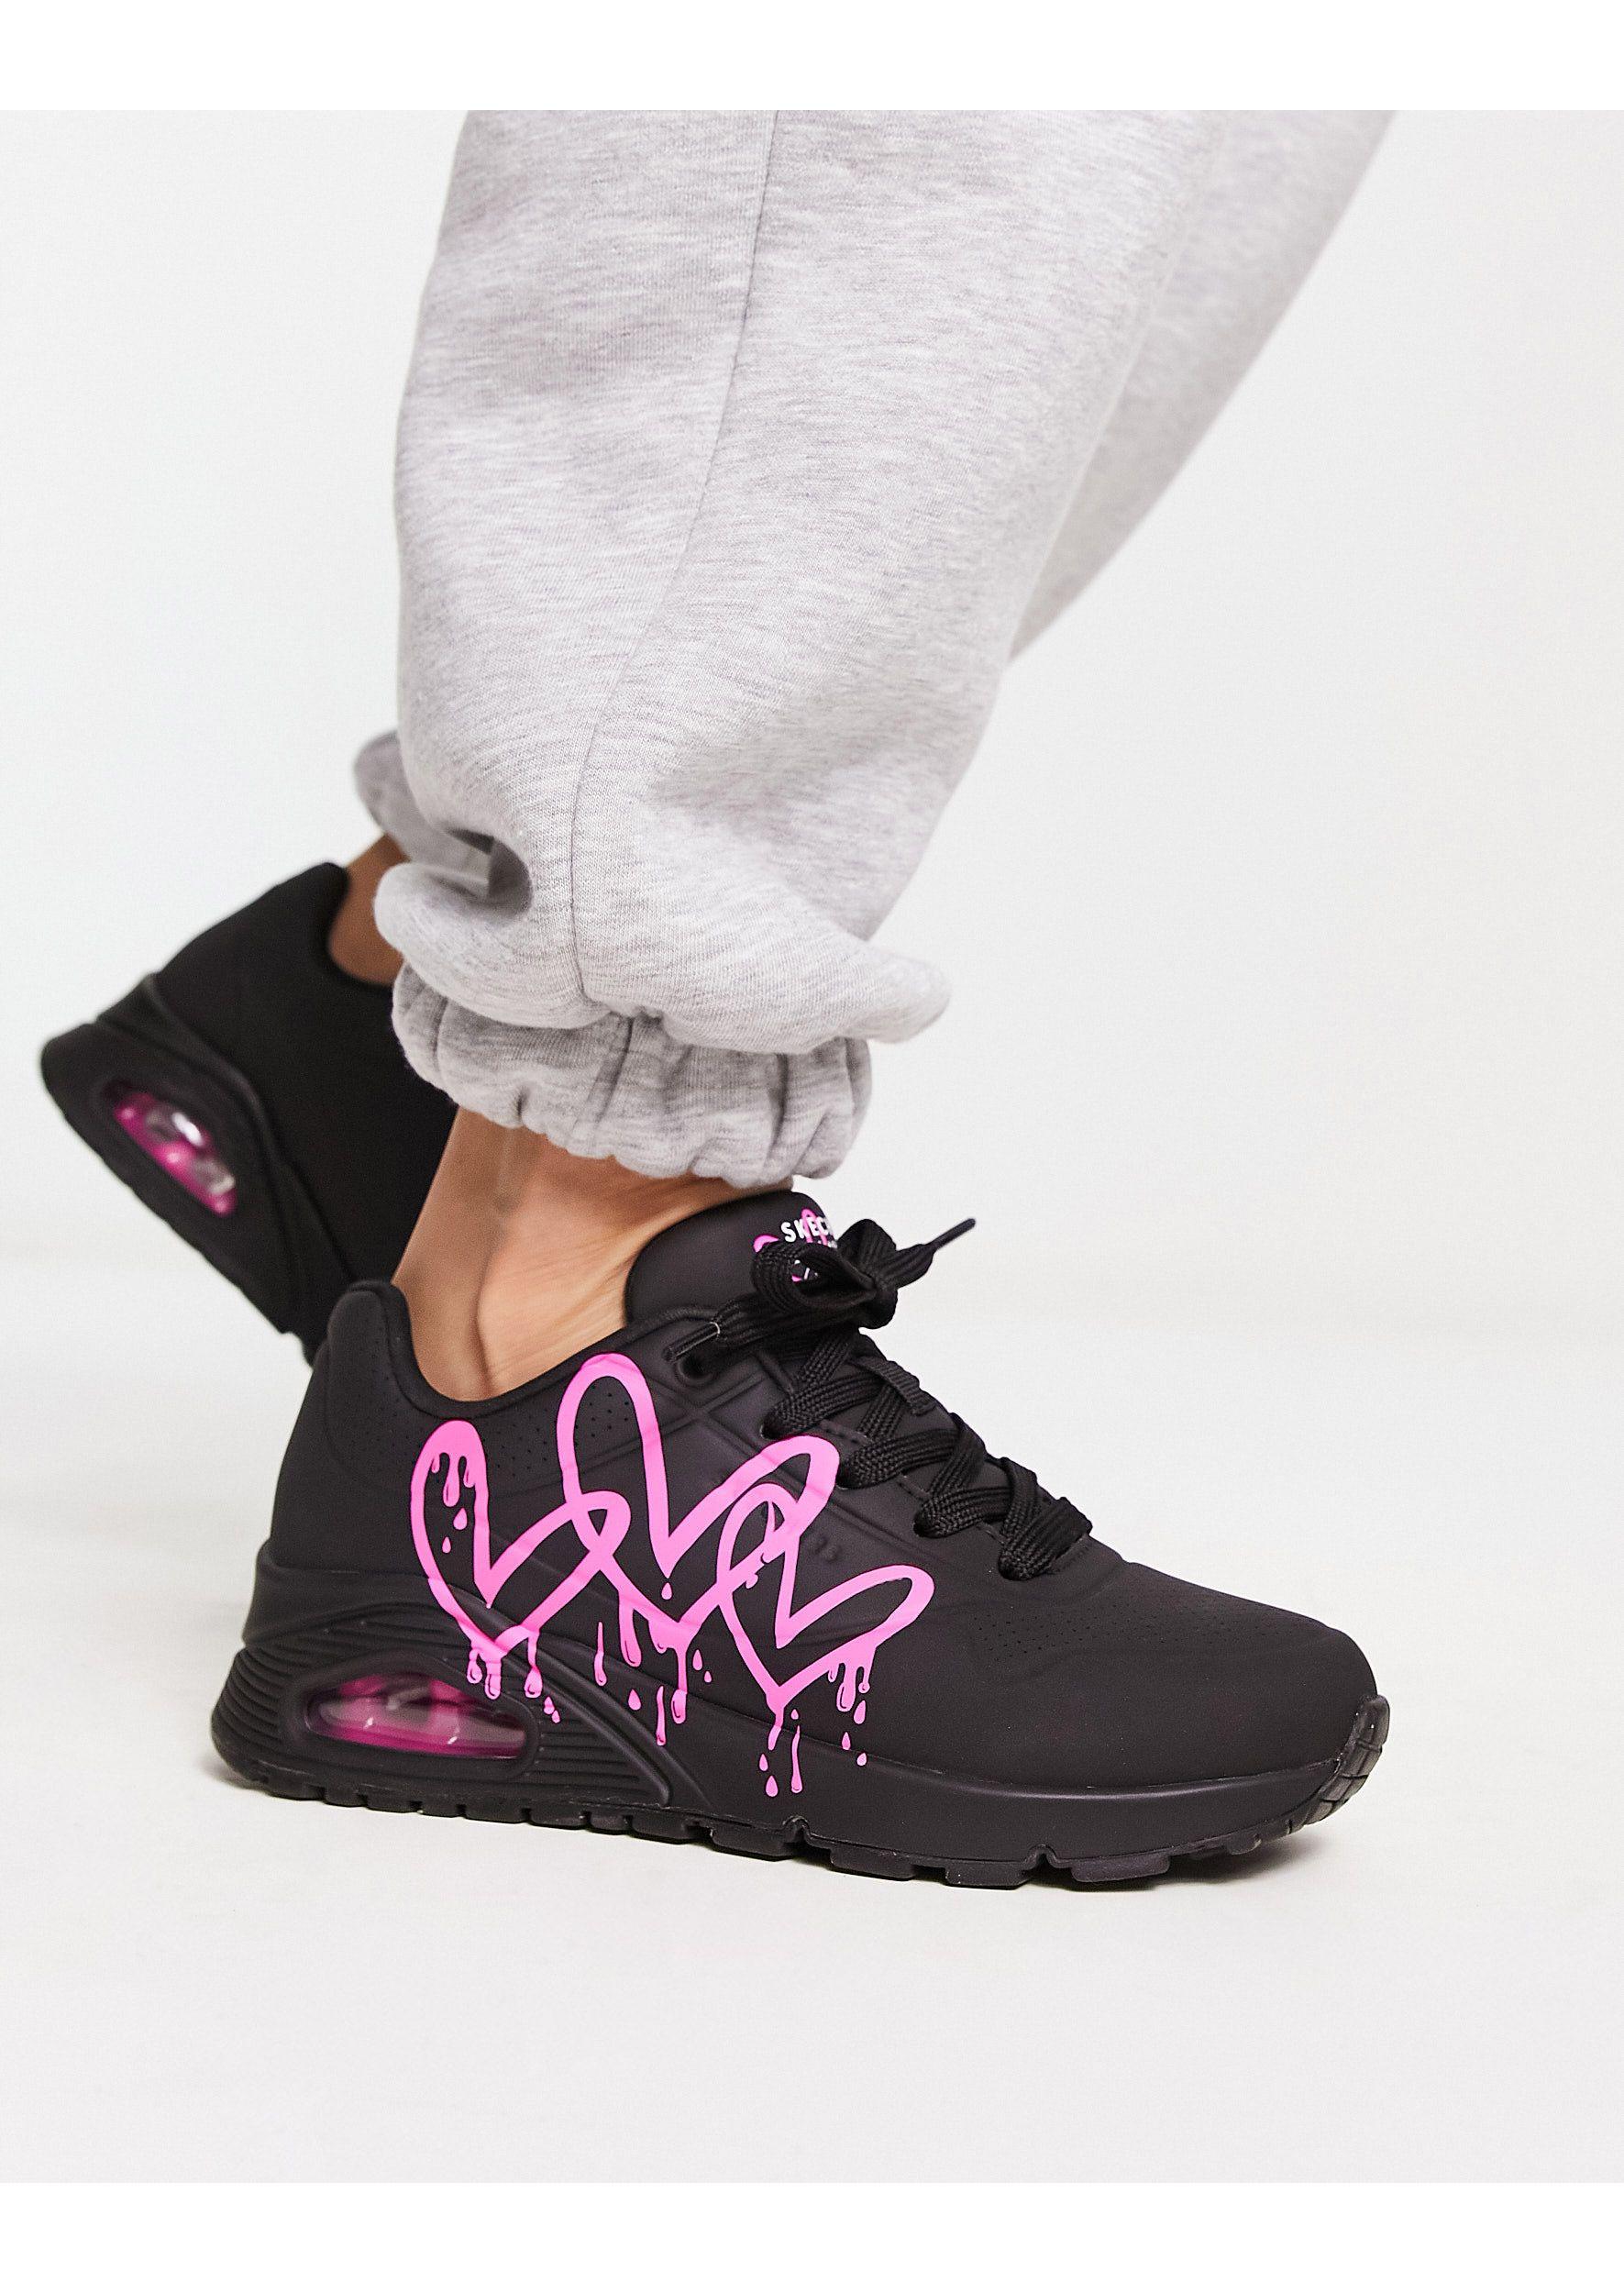 Skechers Art. UNO STAND ON AIR Sneakers in black buy online